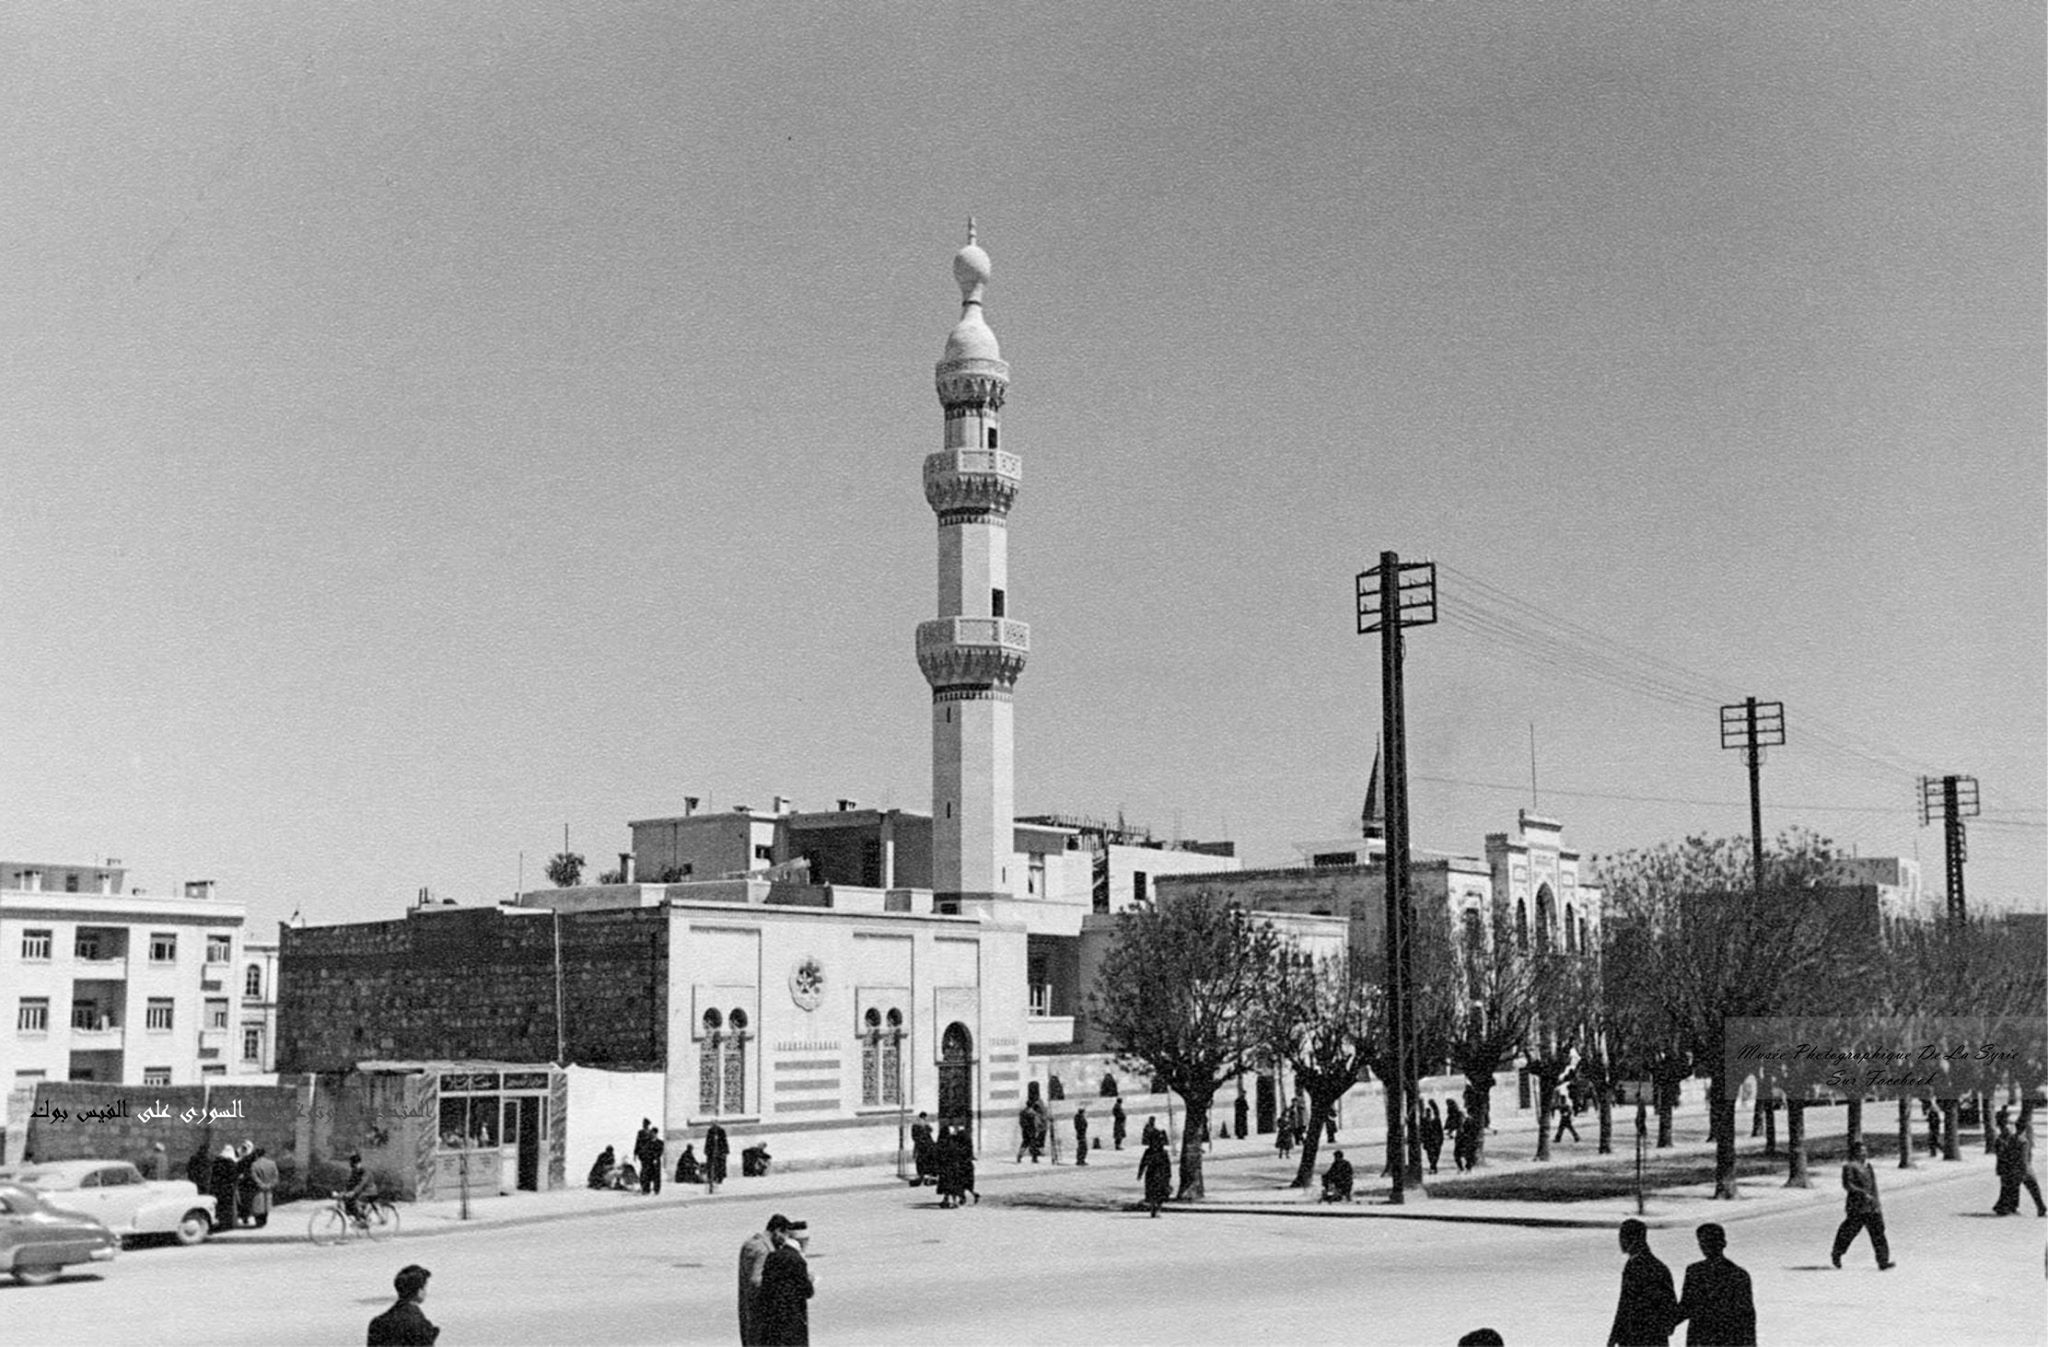 دمشق- جامع المولوية في شارع النصر